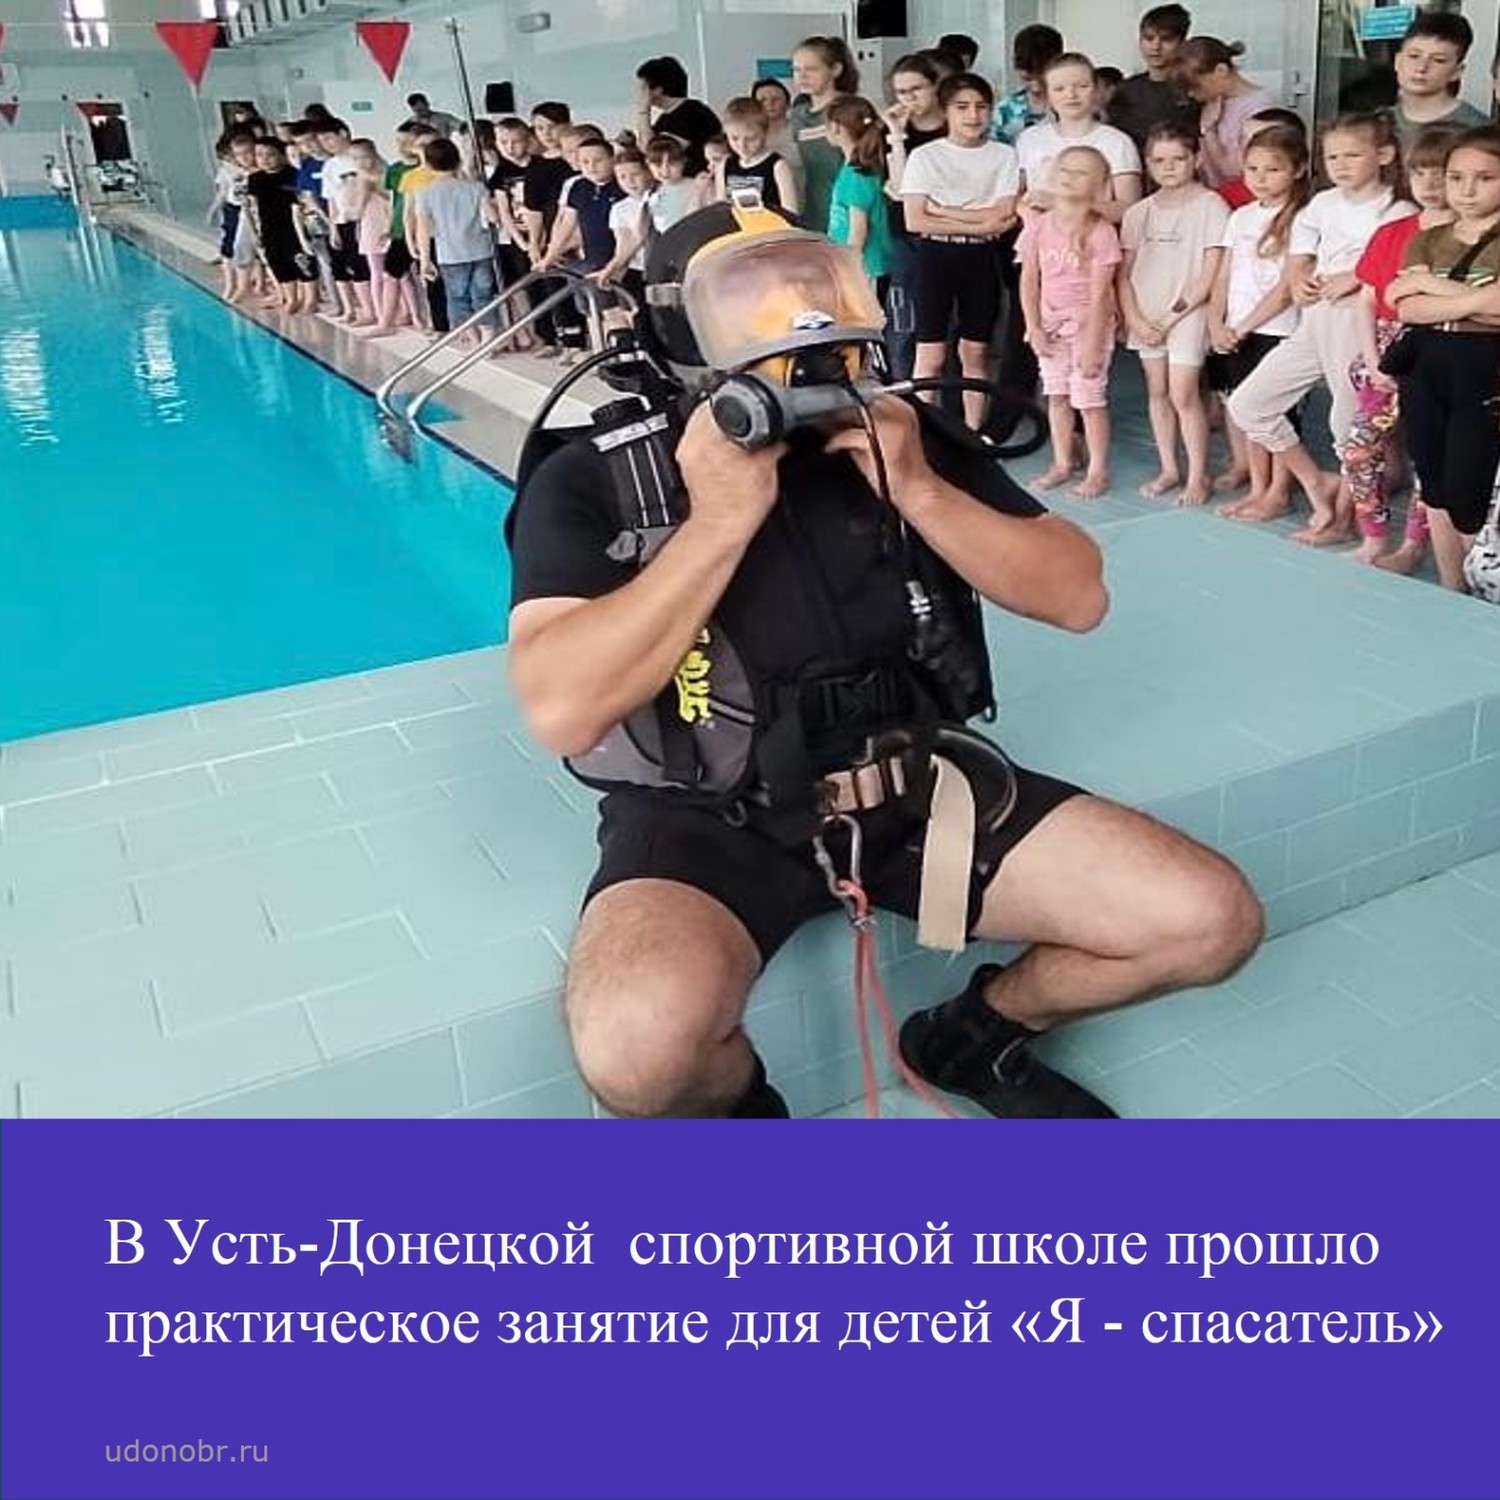 В Усть-Донецкой спортивной школе прошло практическое занятие для детей «Я - спасатель»